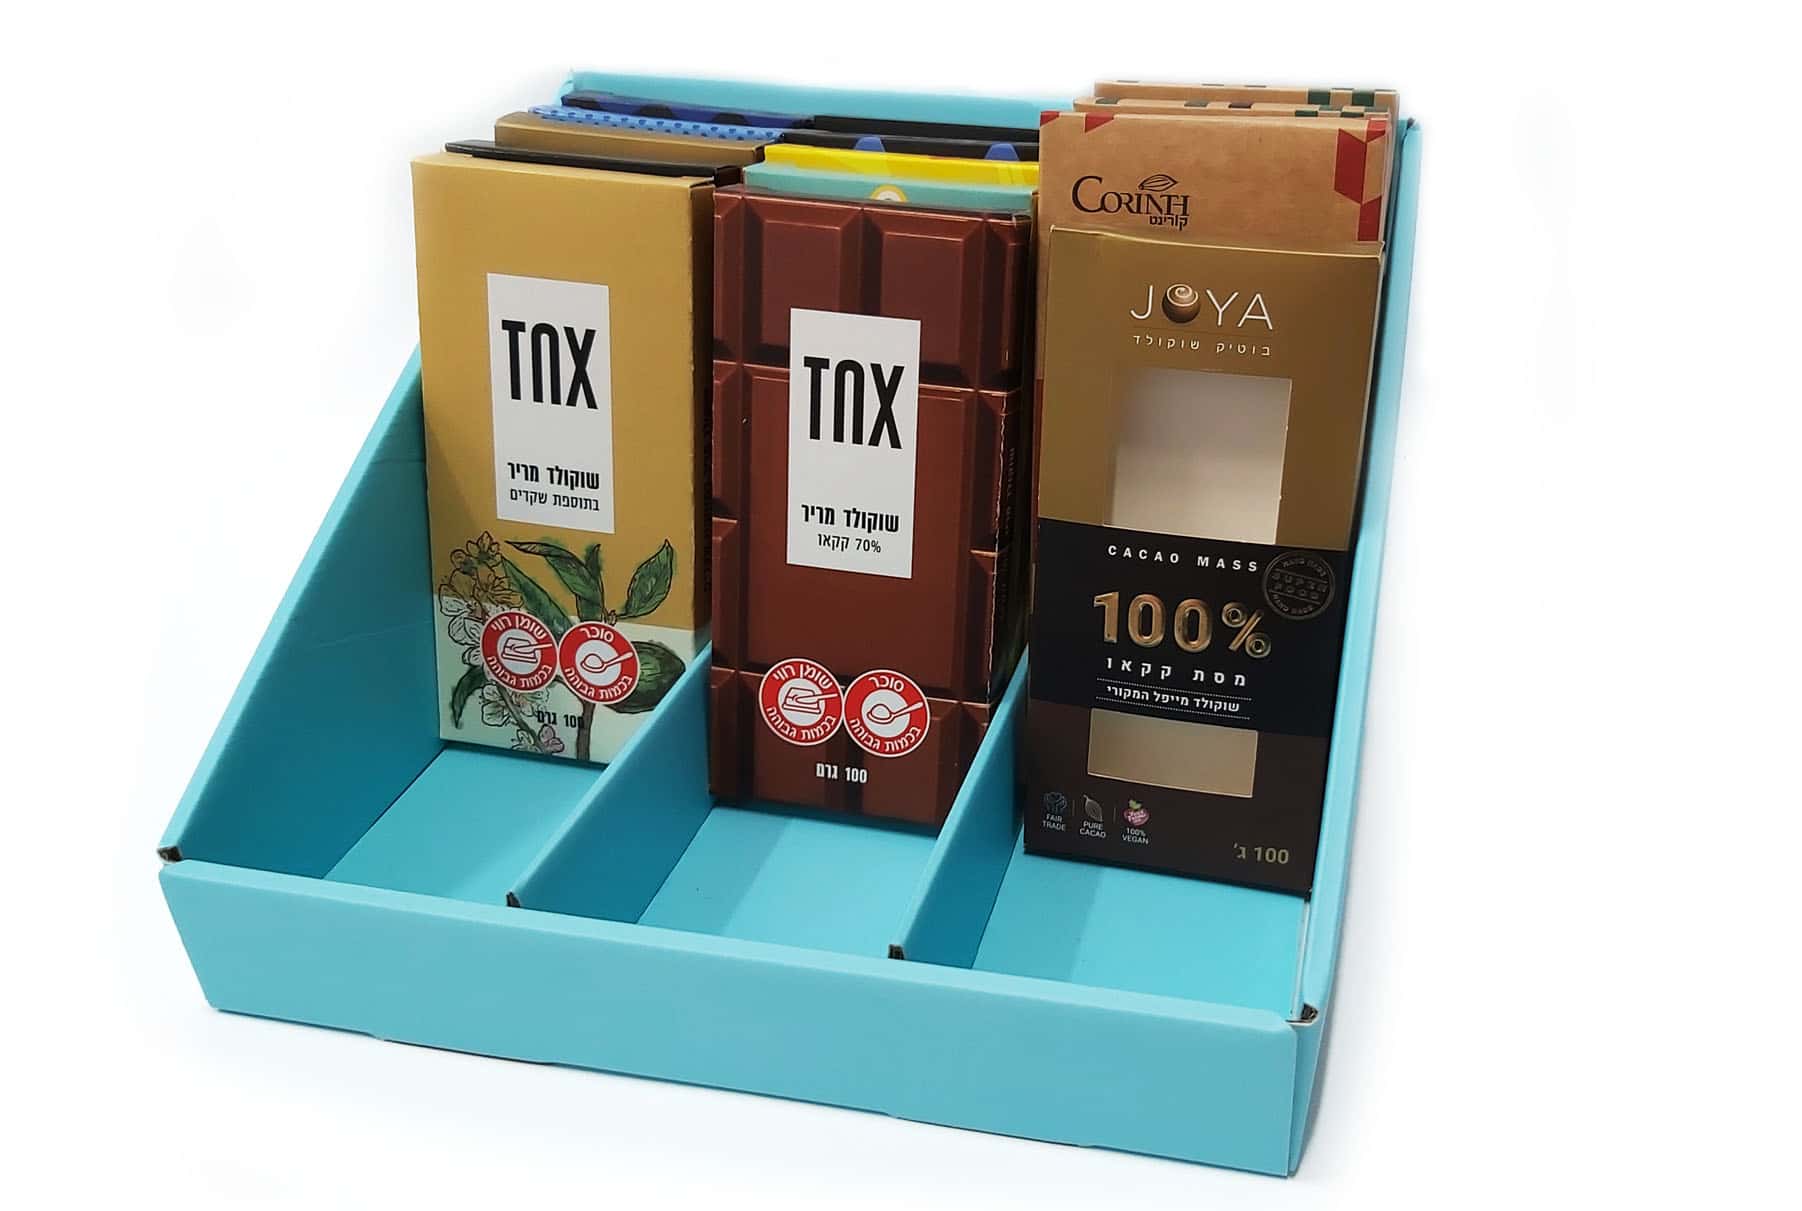 אריזות מזון ייחודיות לשוקולדים של TNX ו- JOYA. האריזות בנויות ממספר שכבות שישמרו על איכות המוצר והטריות שלהם. המארזים עשויים ממגוון חומרי גלם. שימוש במכונות HP INDIGO להדפסה והשבחה